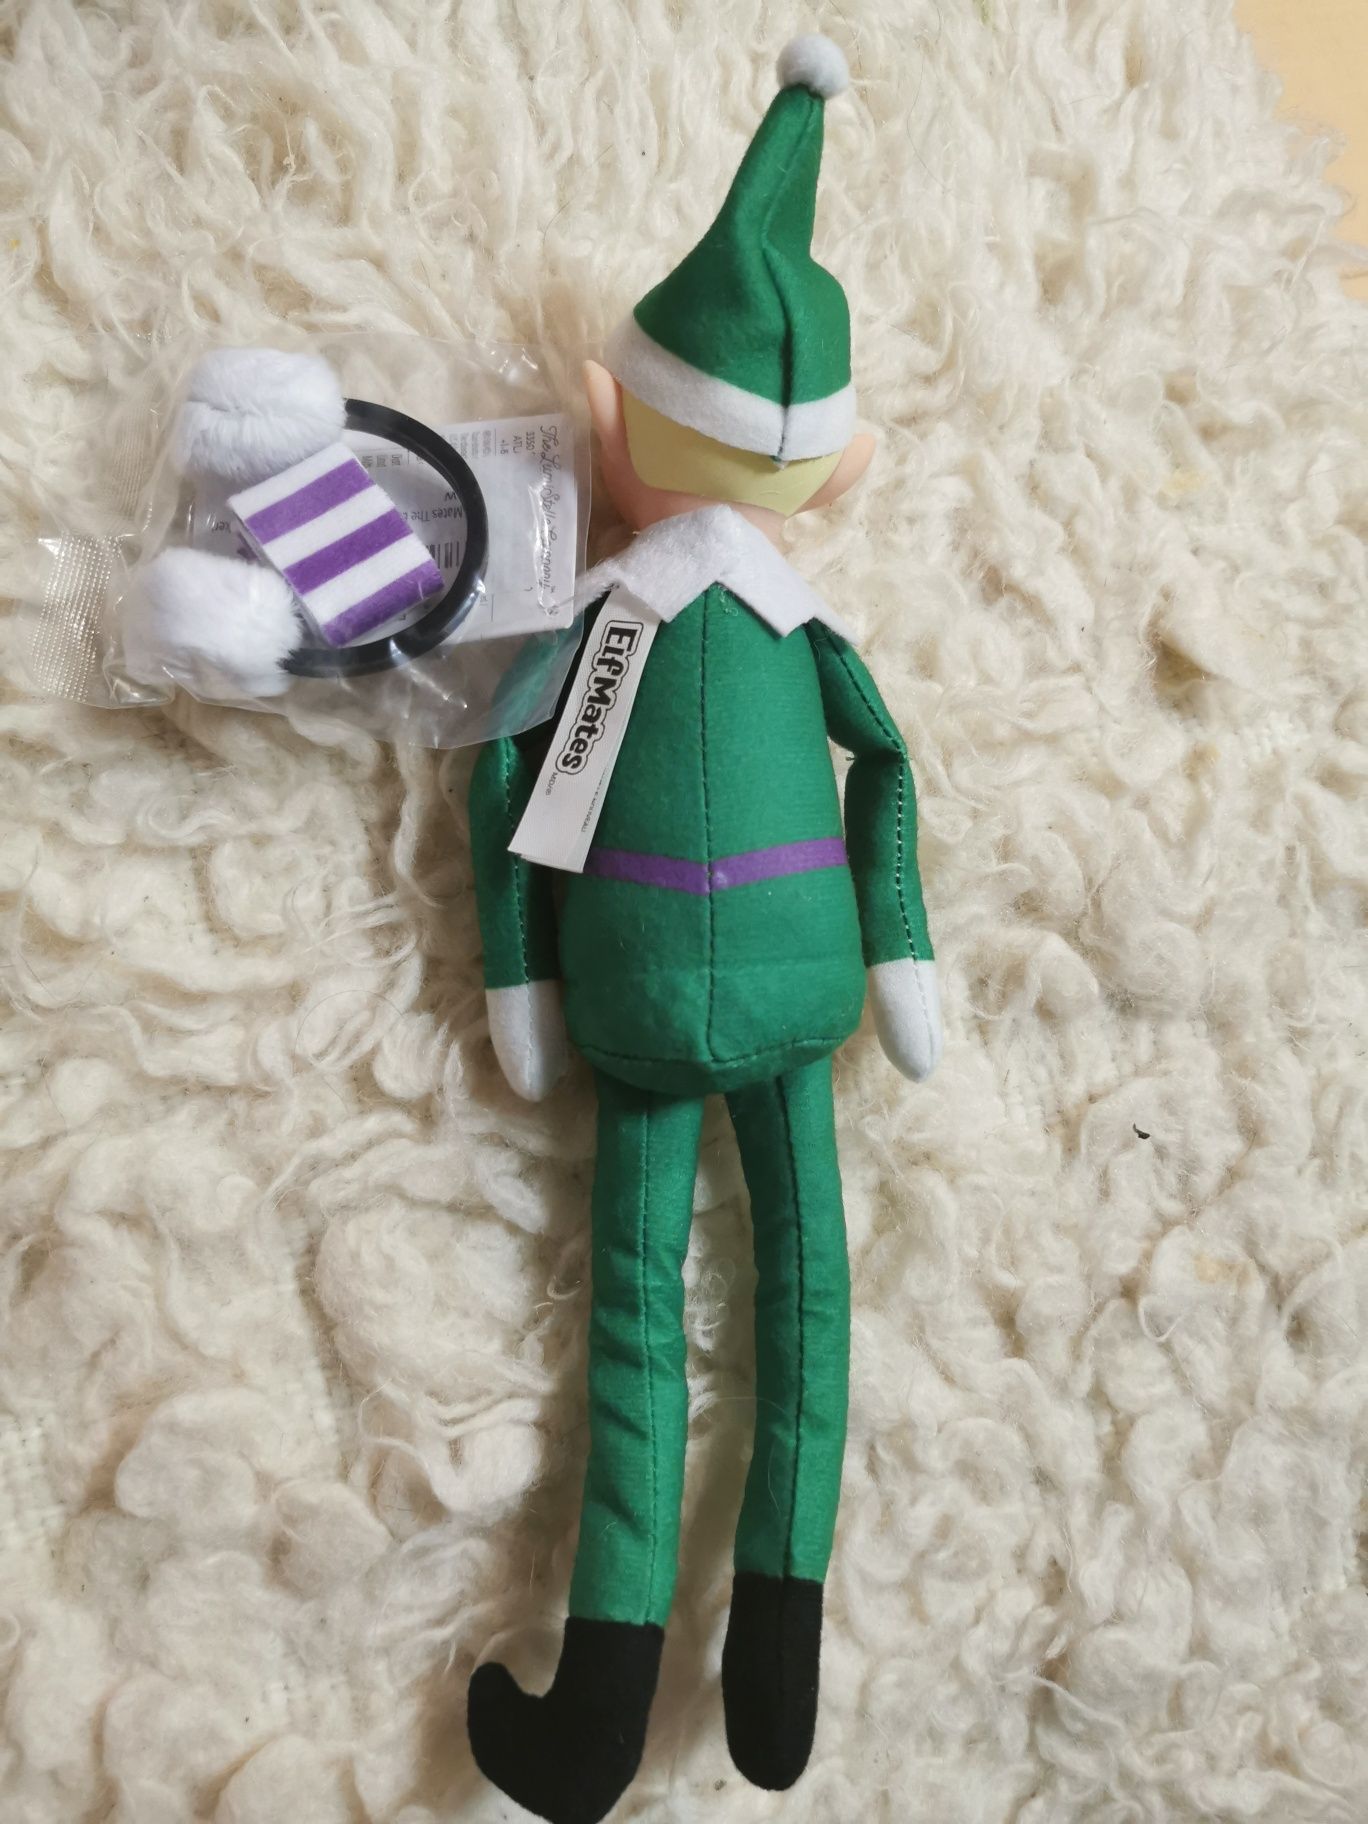 Elf on The shelf producent zabawek wersja Forest de Luxe